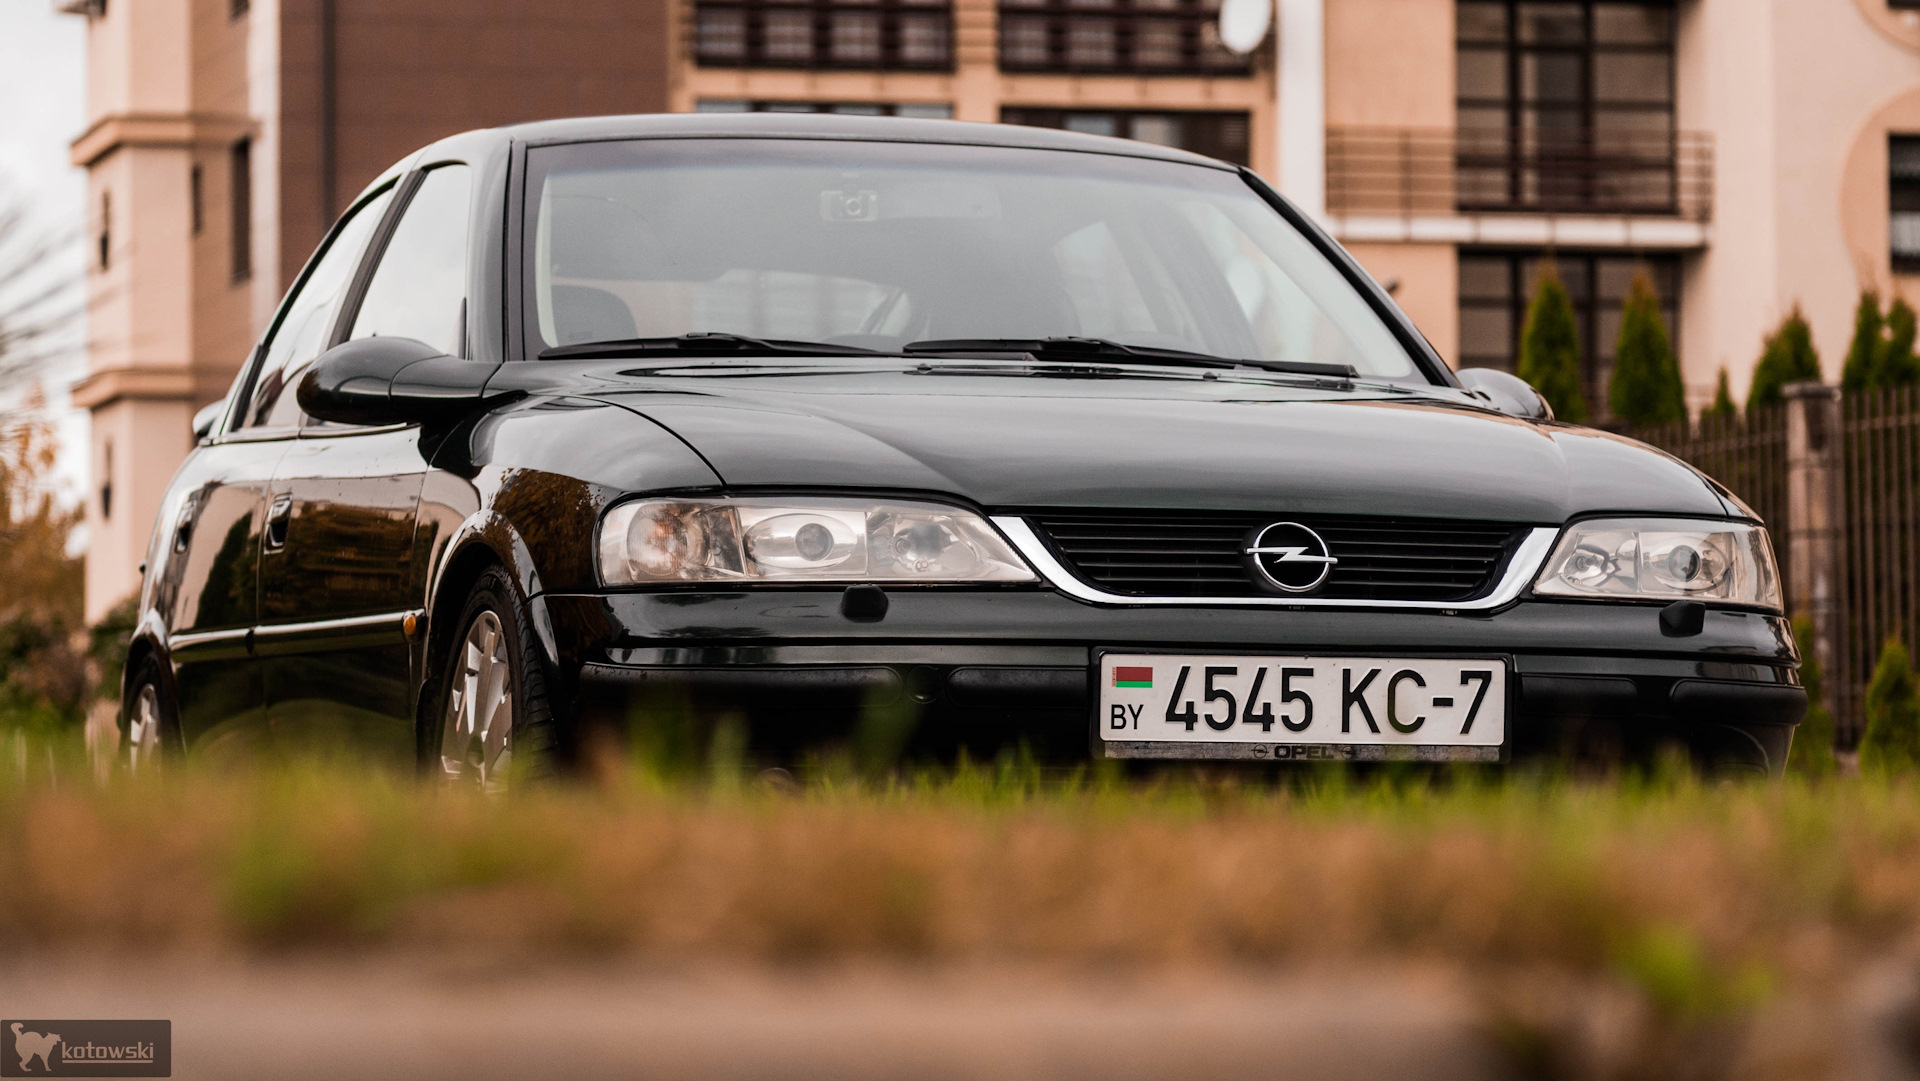 Свет вектра б. Opel Vectra b. Opel Vectra b 2000. Опель Вектра б 2000. Опель Вектра 2000.